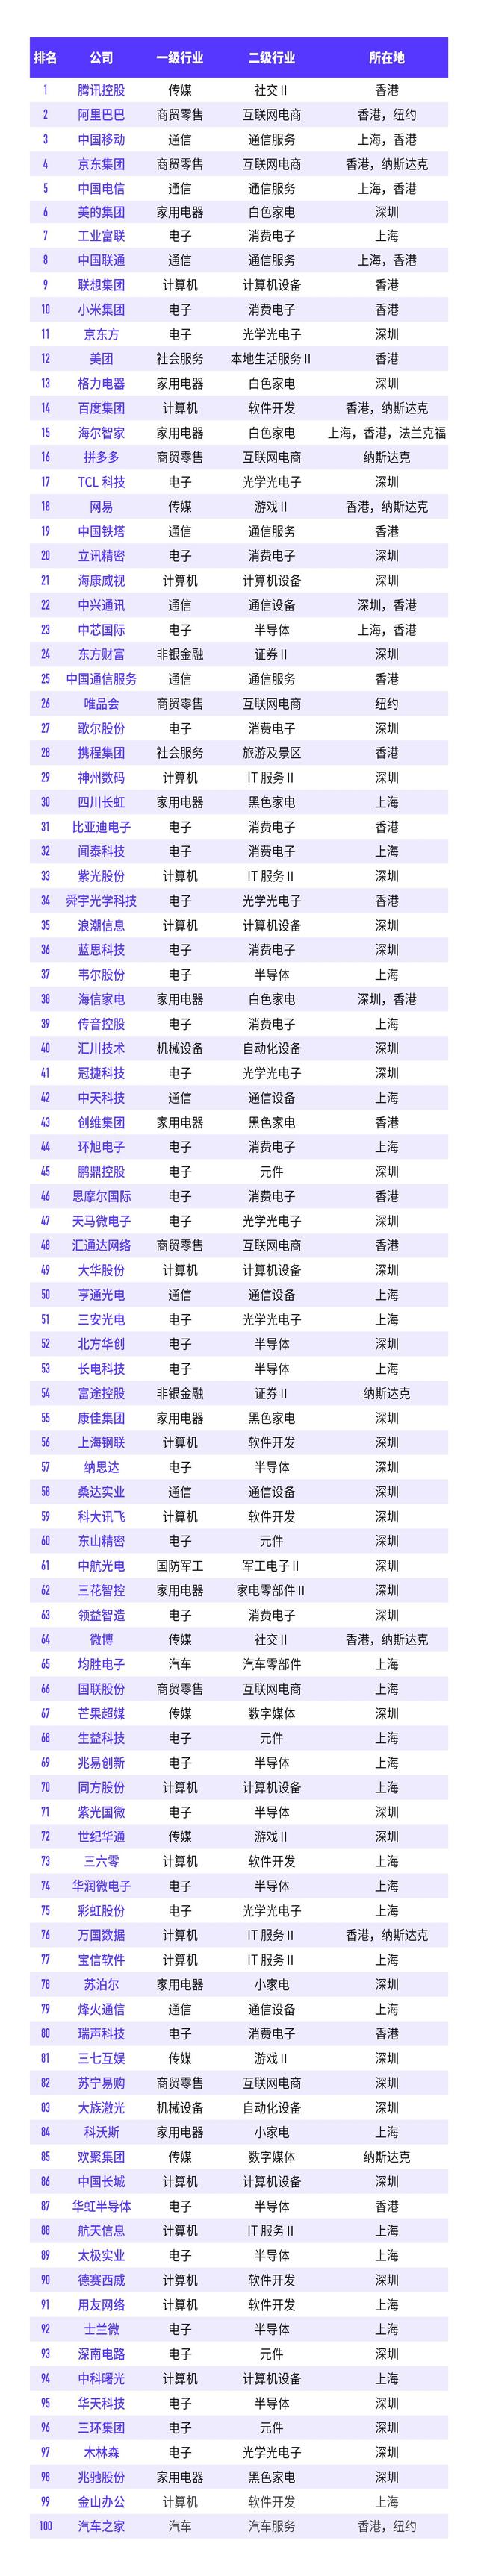 中国数字经济100强榜单发布 电子行业比例最高